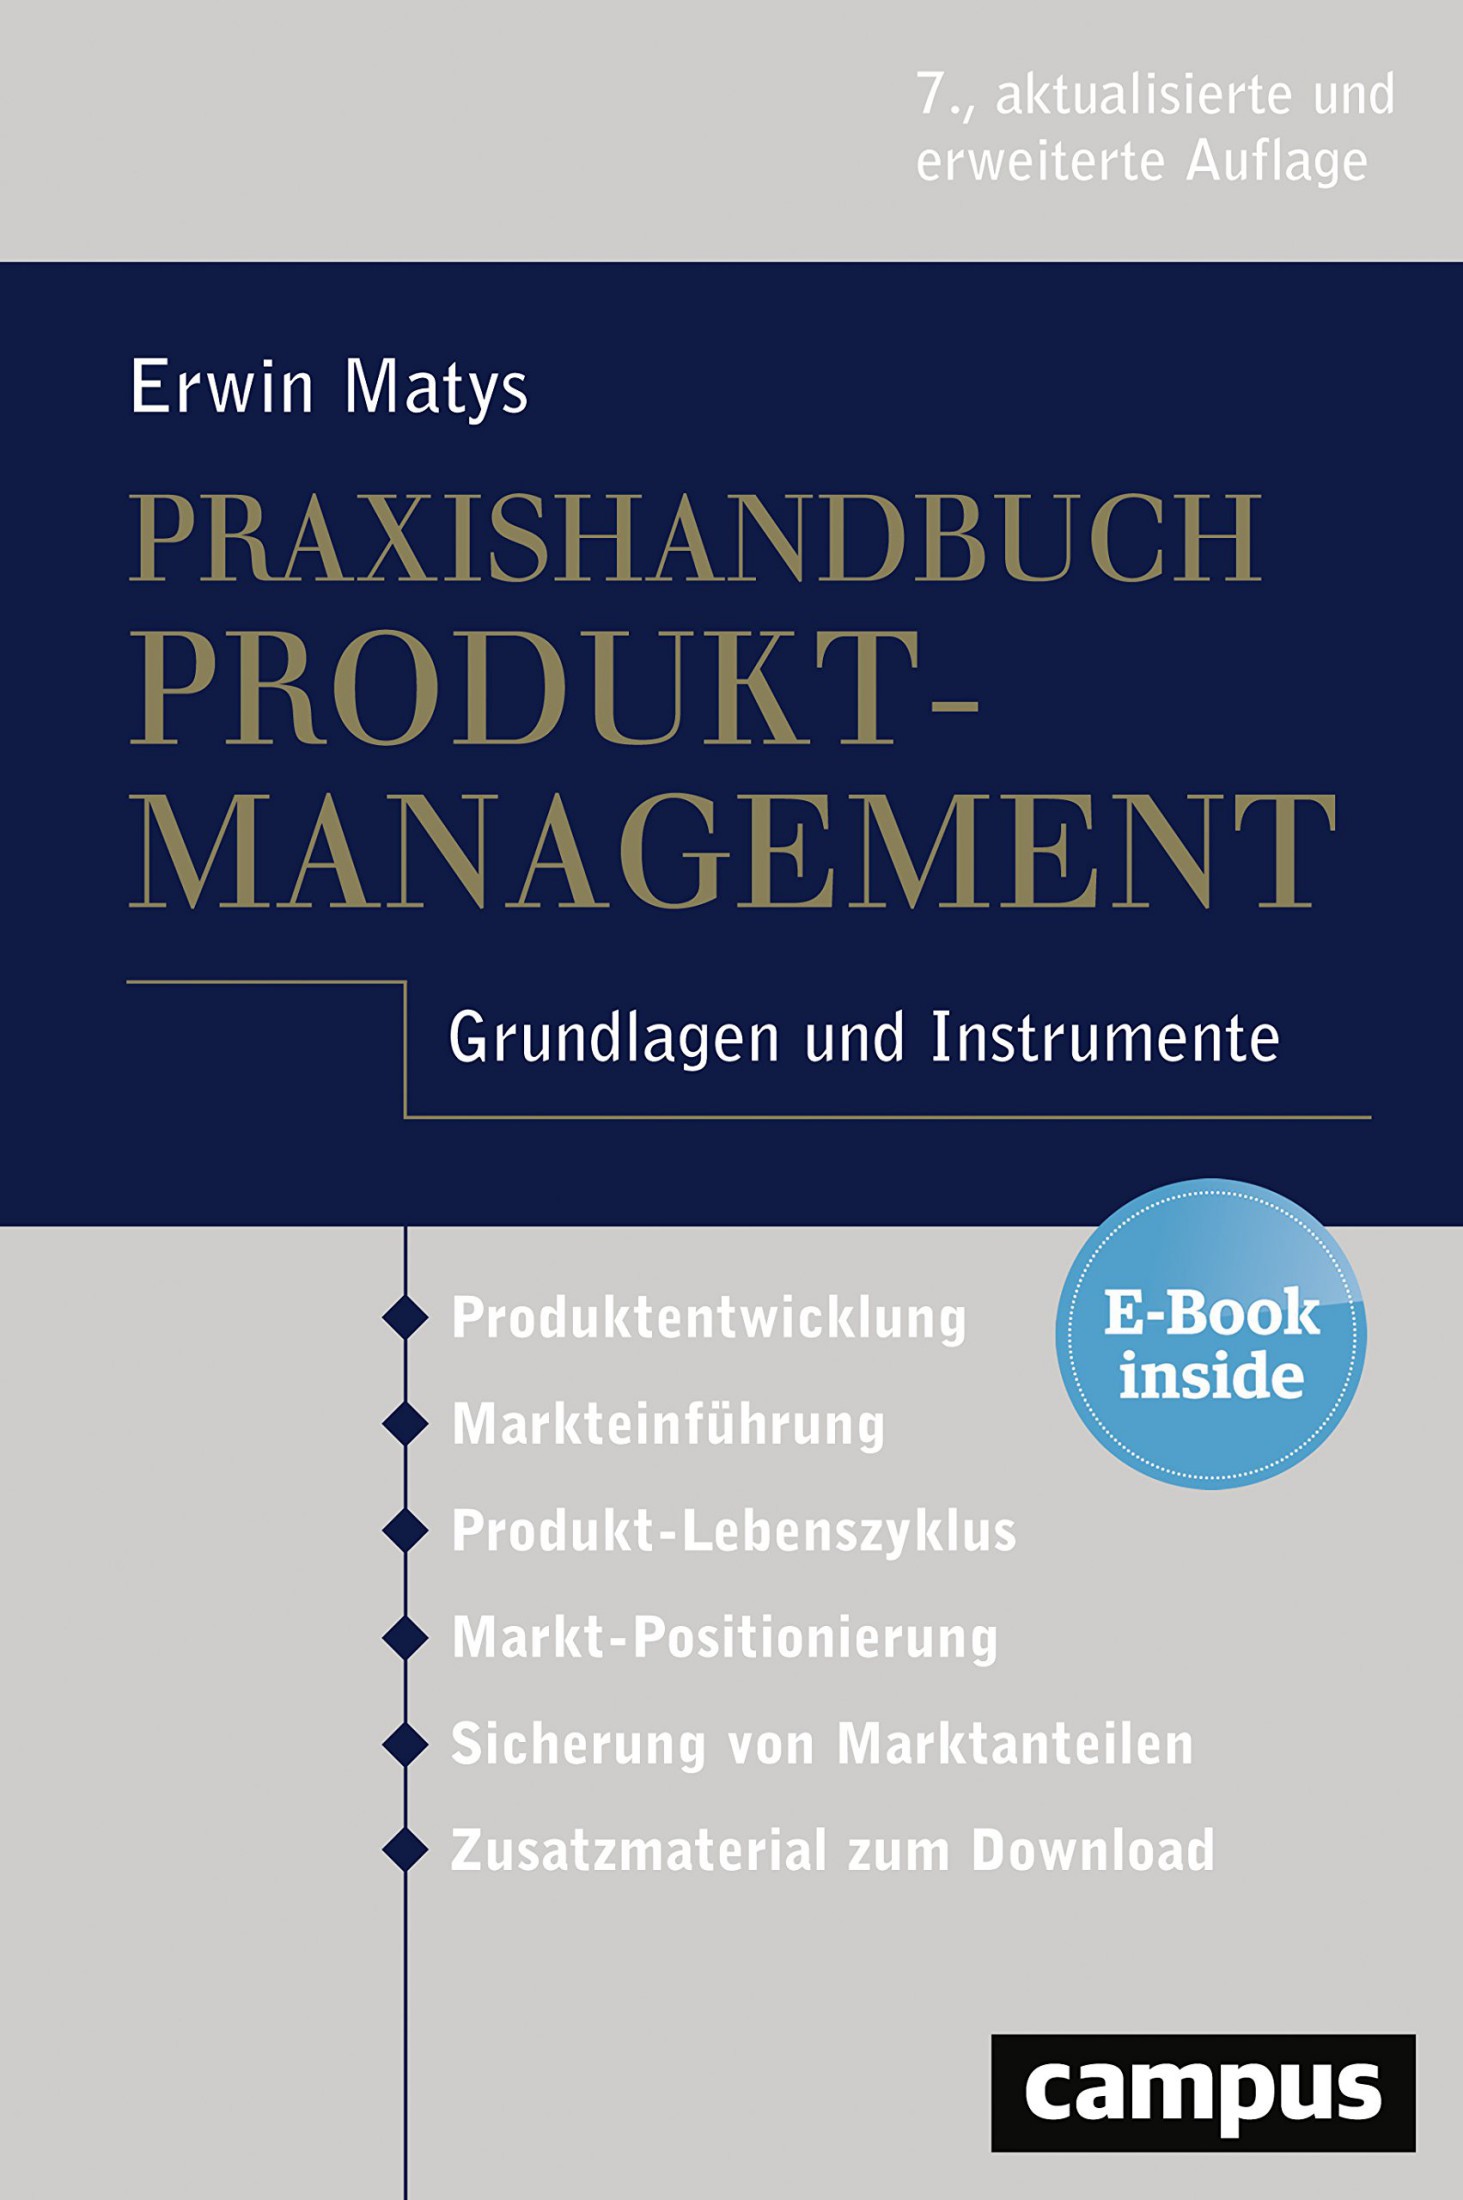 Praxishandbuch Produktmanagement: Grundlagen und Instrumente, plus E-Book inside (ePub, mobi oder pdf)